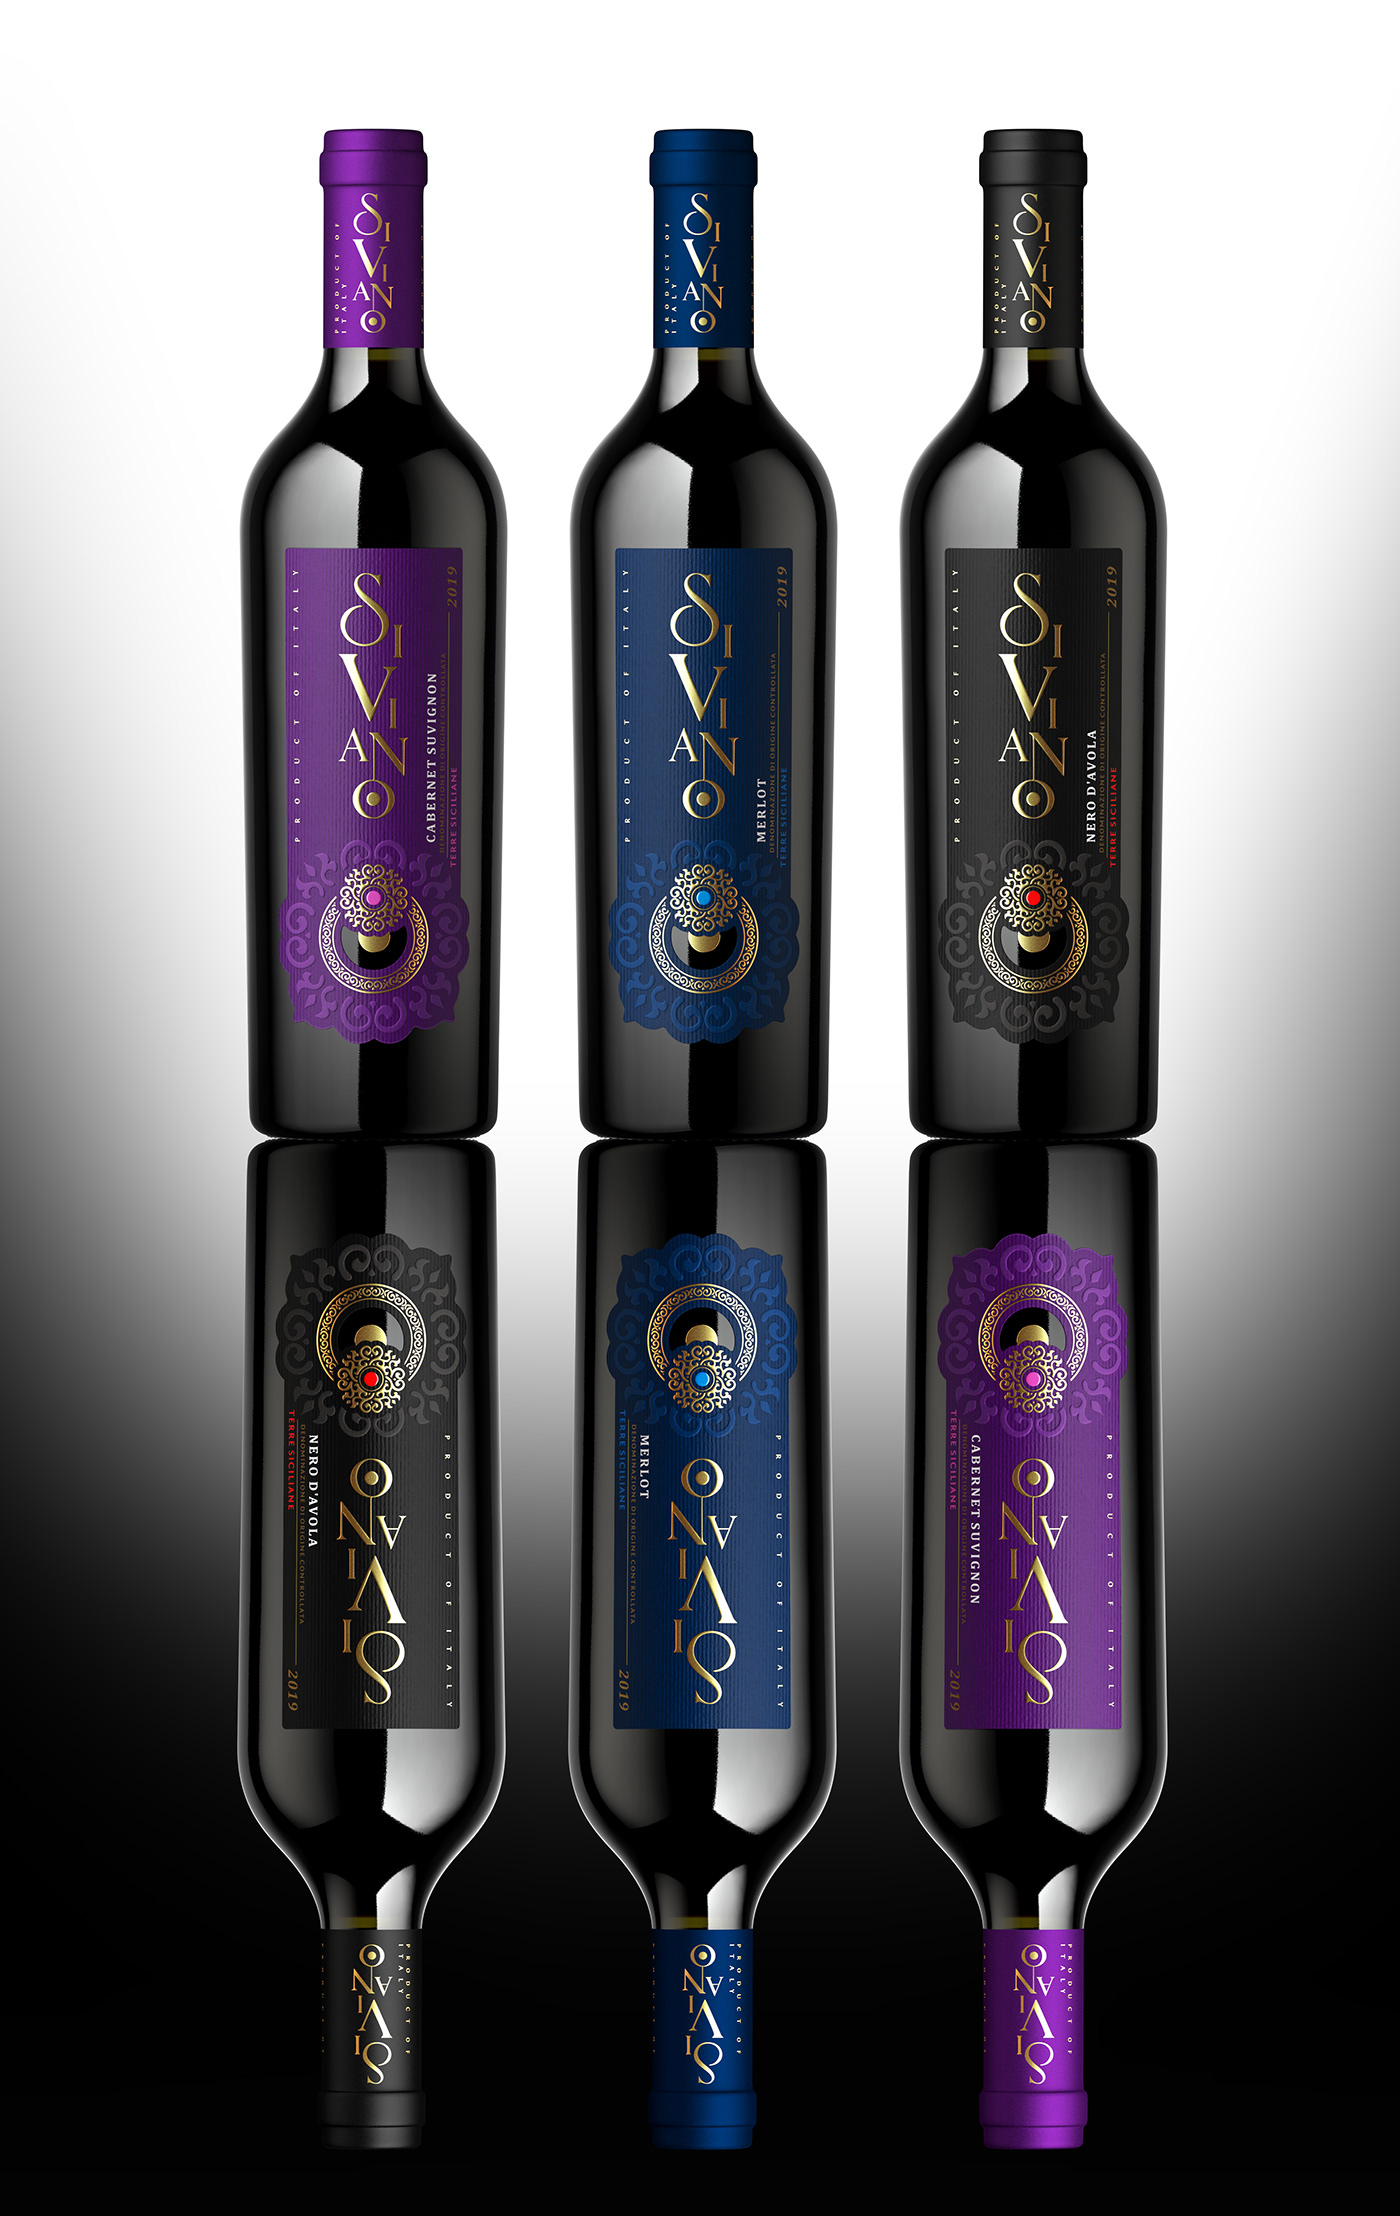 label design brand identity design Graphic Designer Packaging packaging design Sumilov shumilovedesign valerii sumilov italian wine